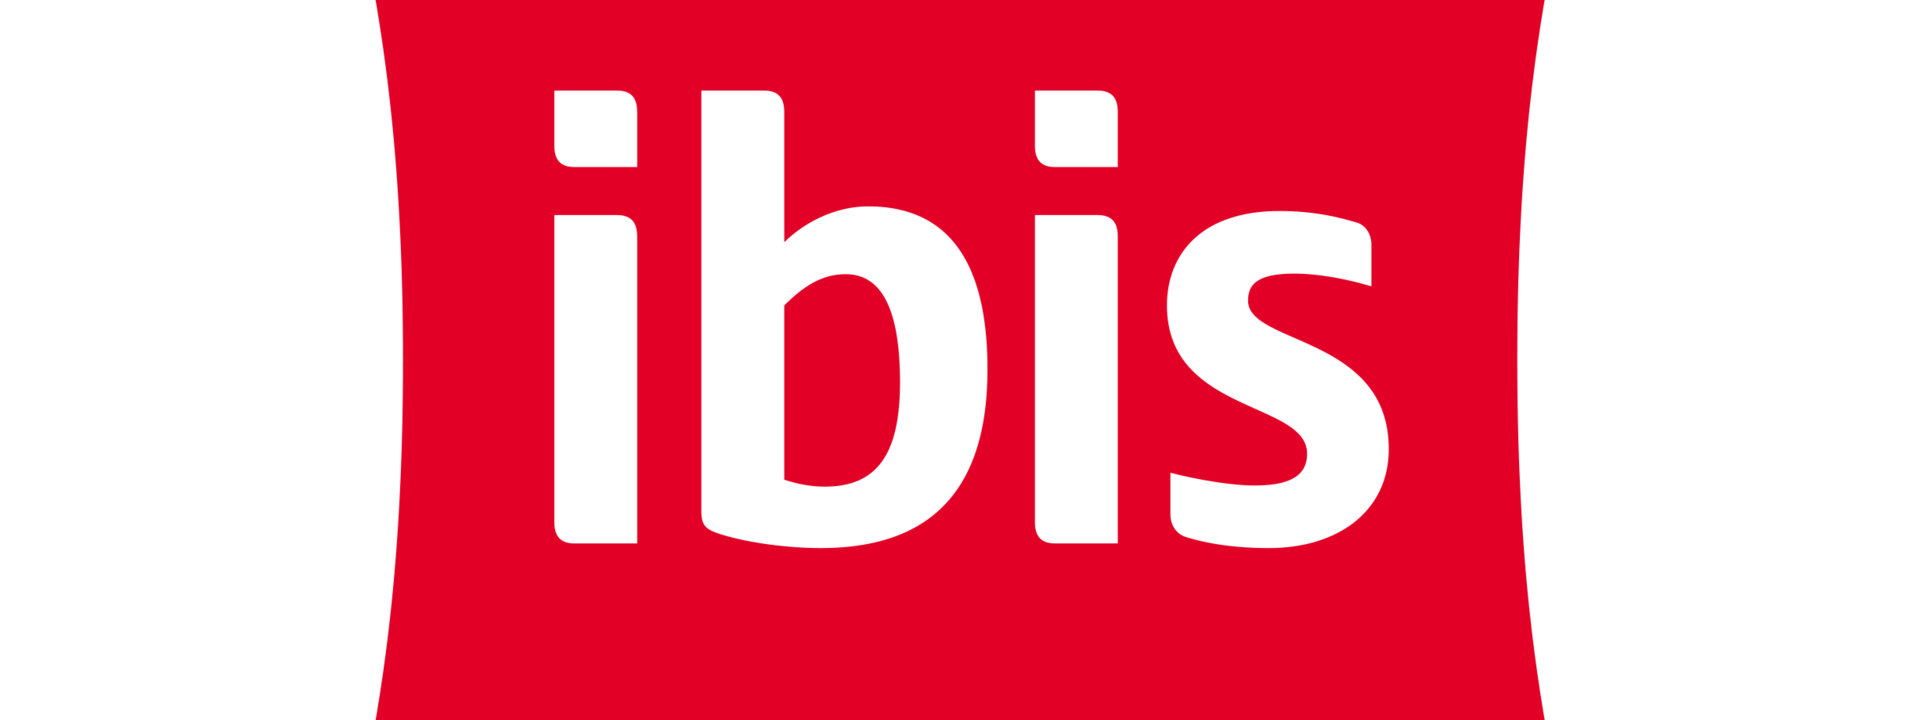 logo_ibis_rgb.png